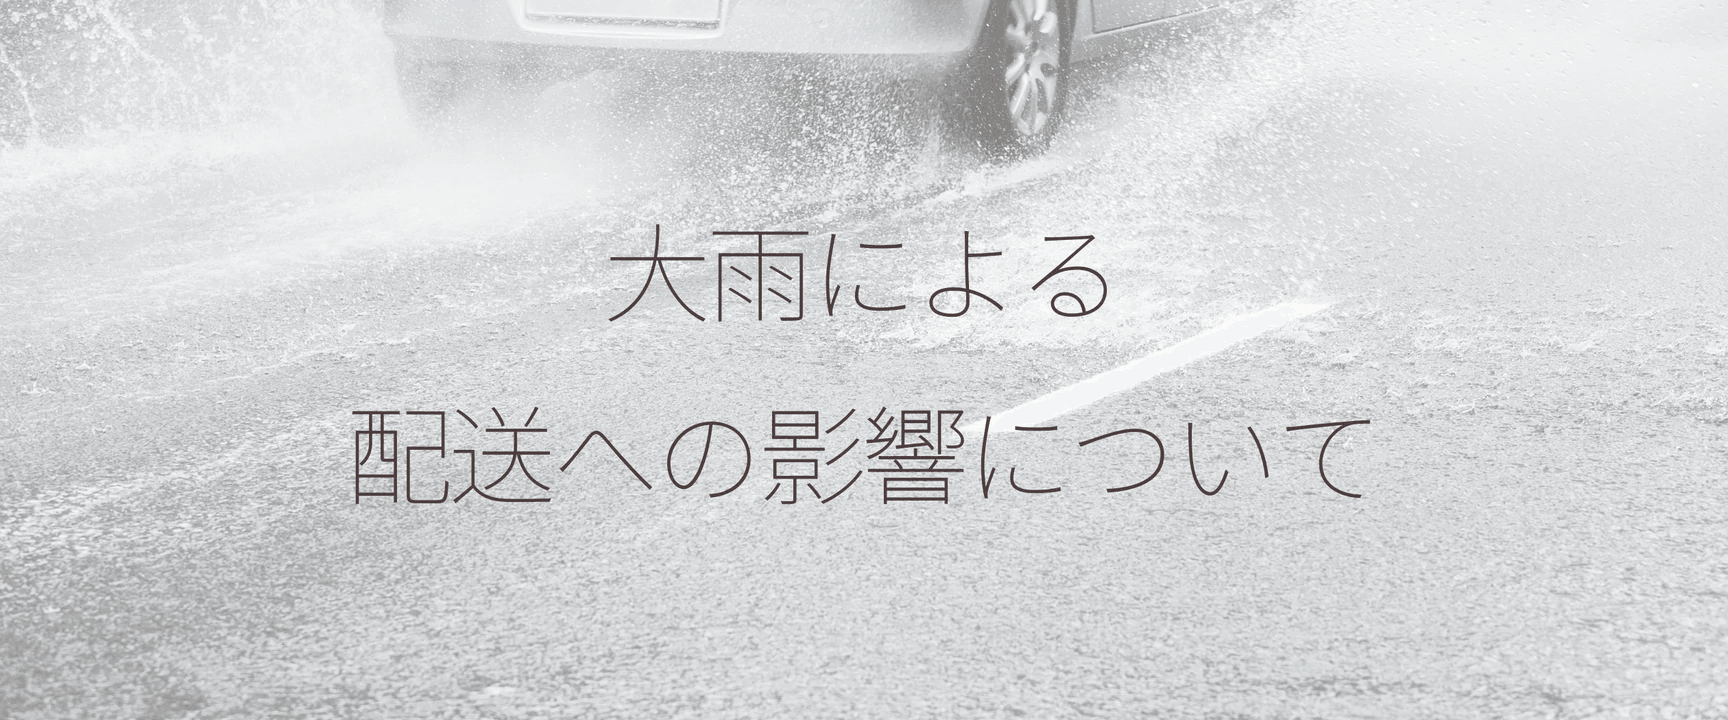 西日本を中心とする大雨の影響について（10月7日 10:00更新） - Cresma's クリスマス